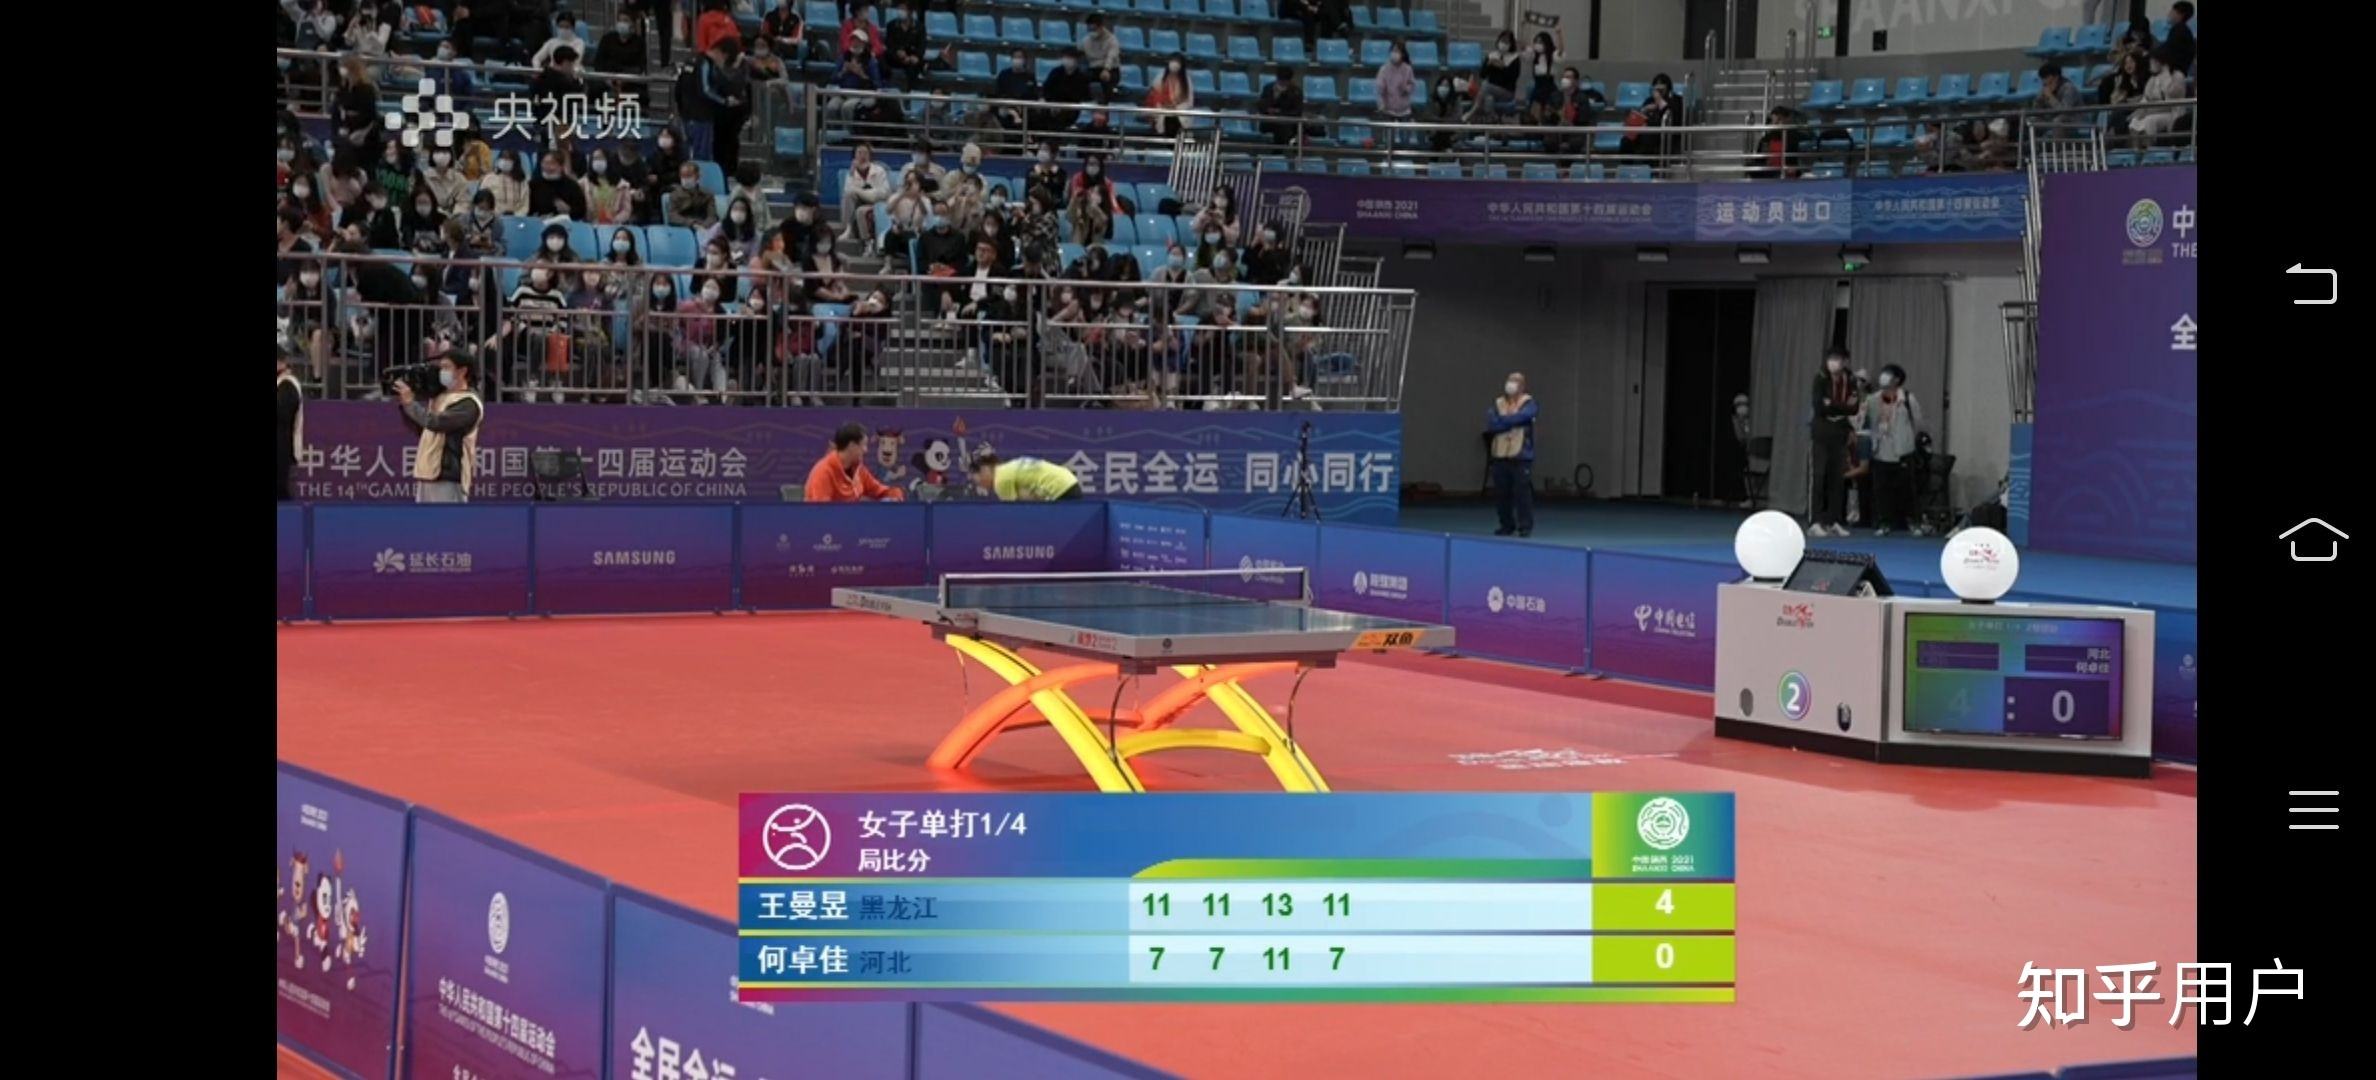 全运会乒乓球女单冠军的简单介绍